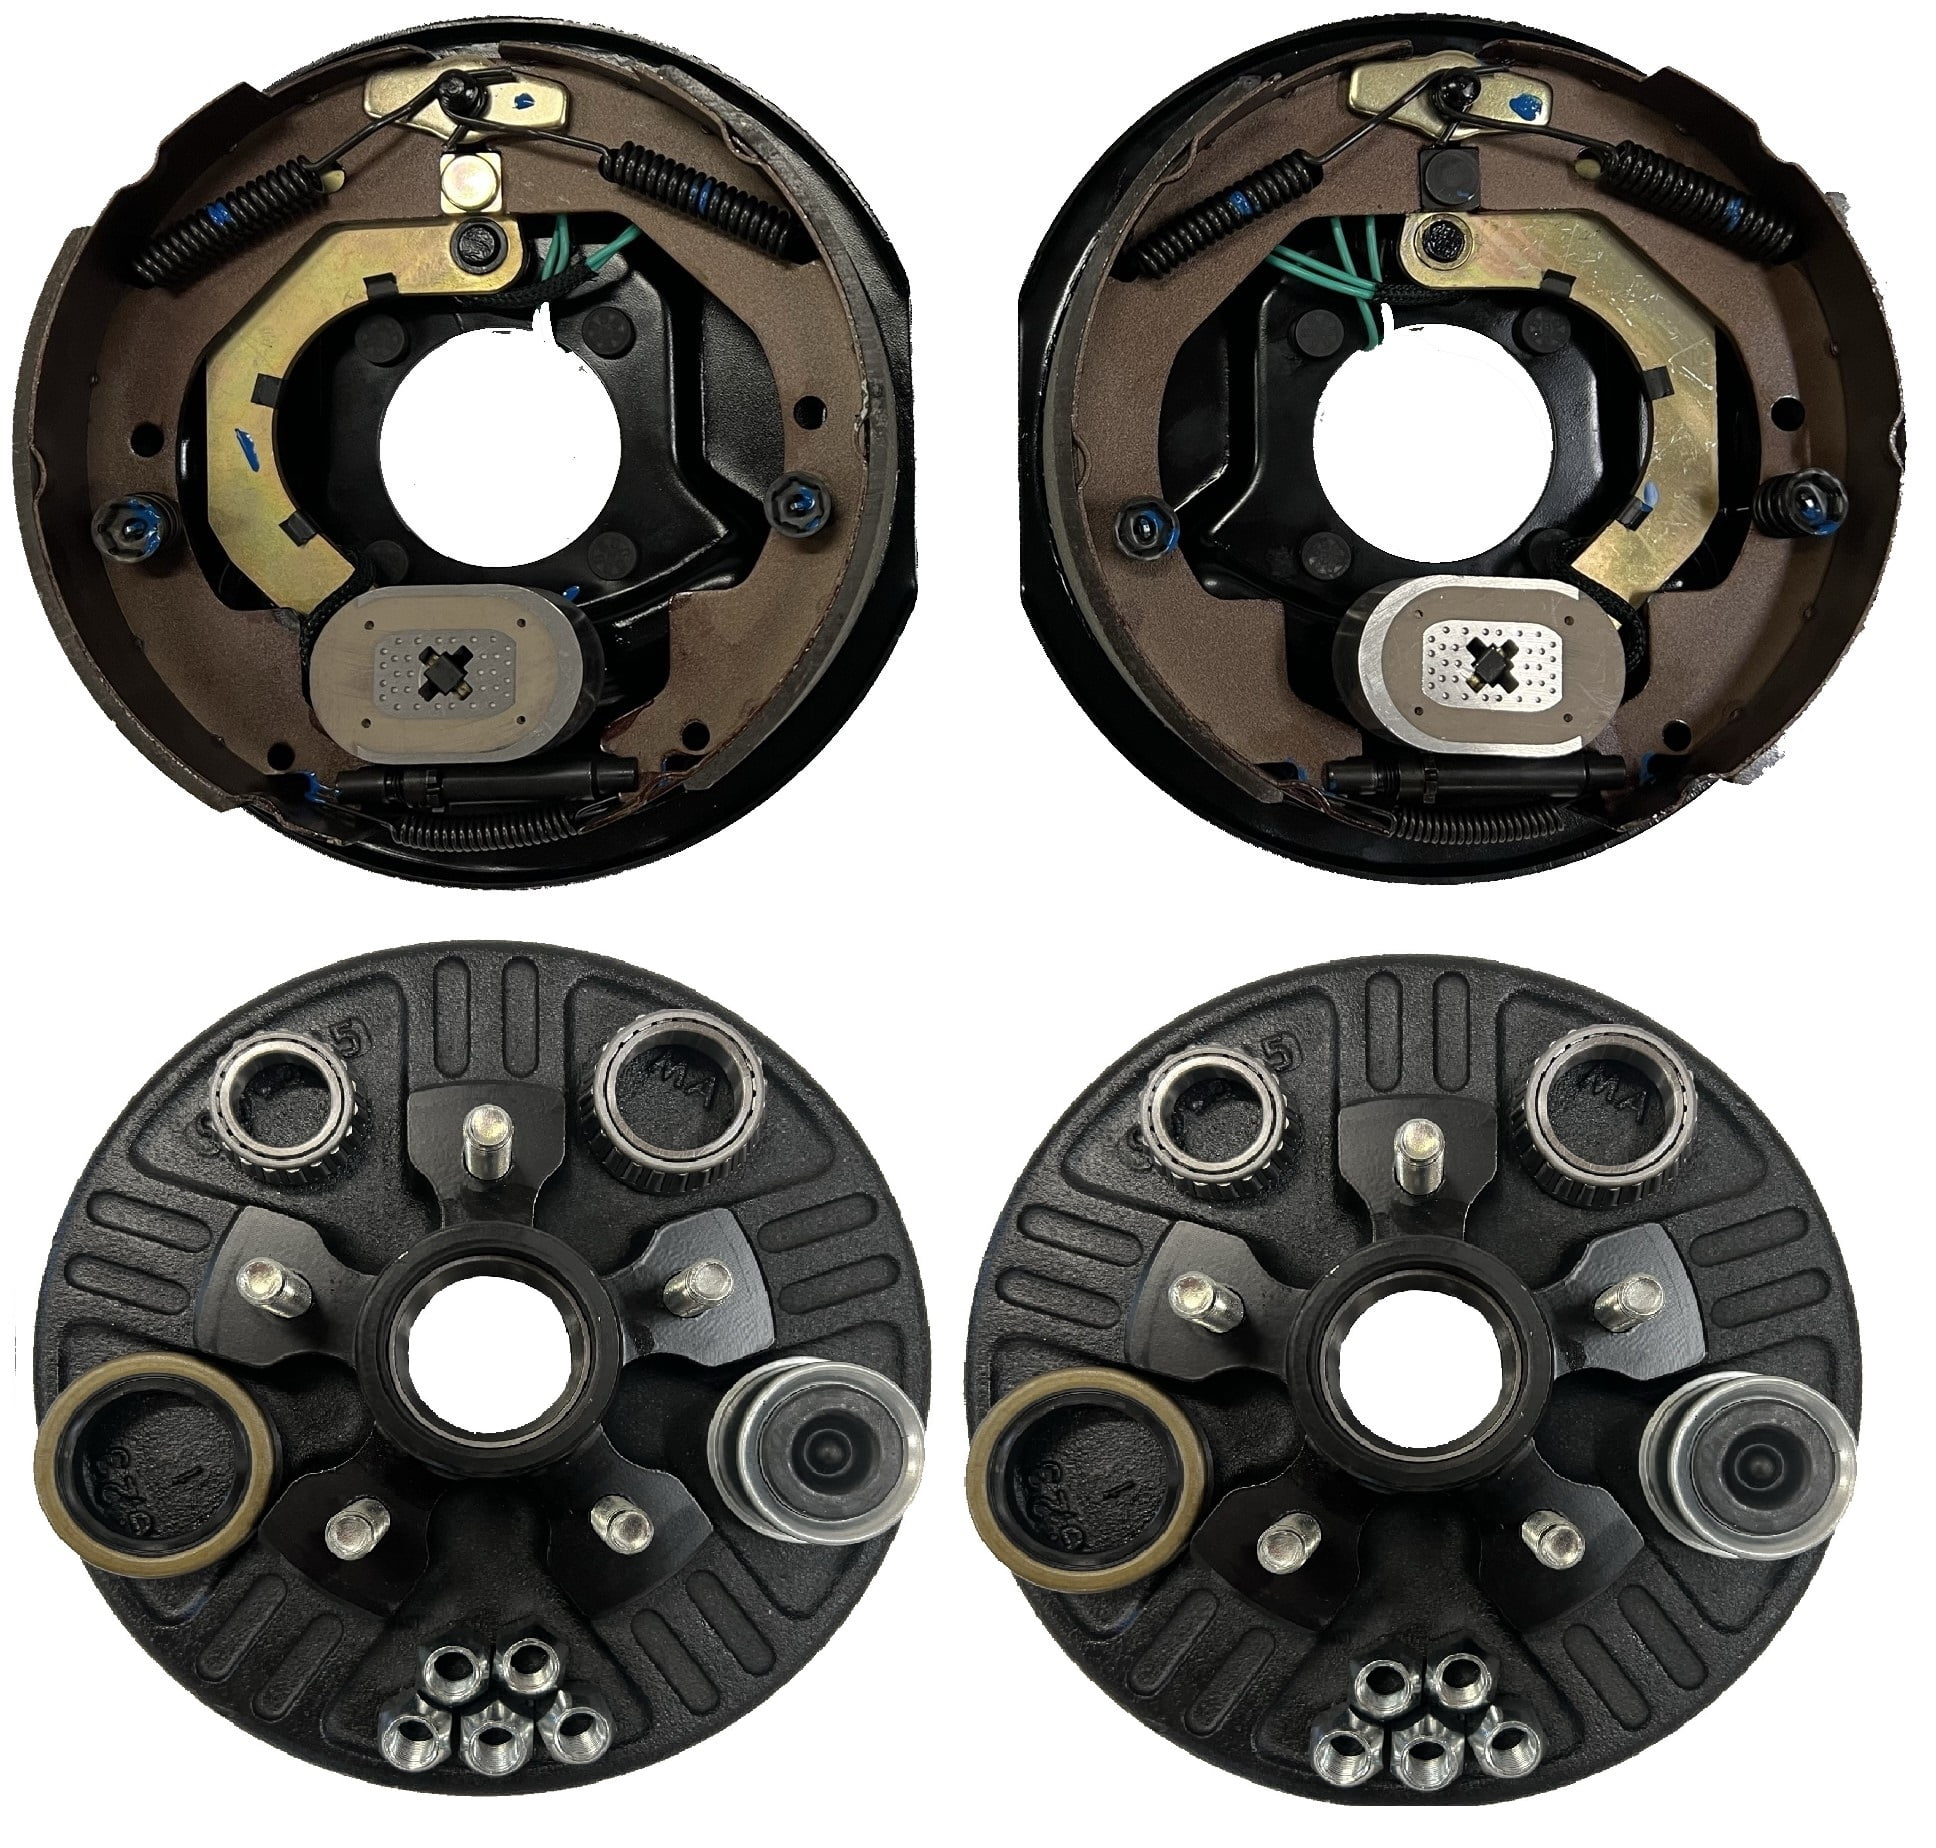 w/4 Hub/Drum Kit 2LH 2RH 2-Pack Trailer Brake Backing Plates 12 in. 8 on 6.5 